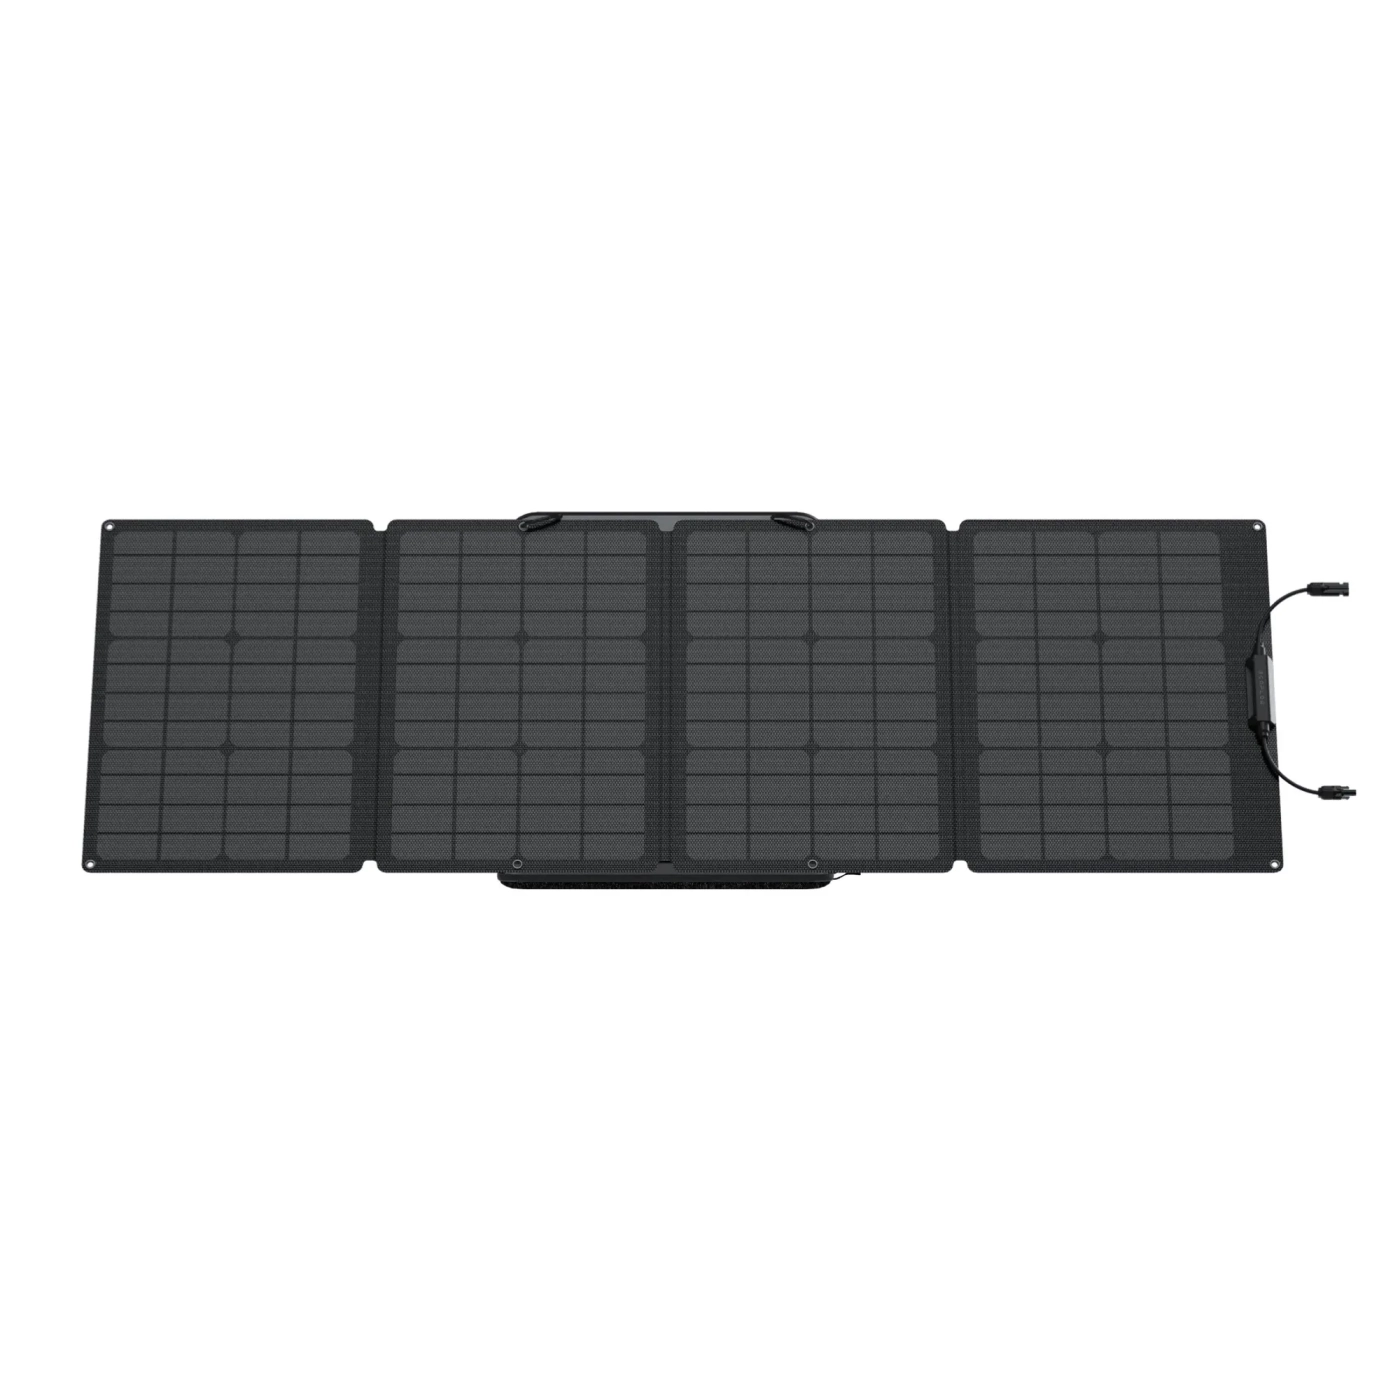 Купить Комплект EcoFlow DELTA + 110W Solar Panel - фото 7